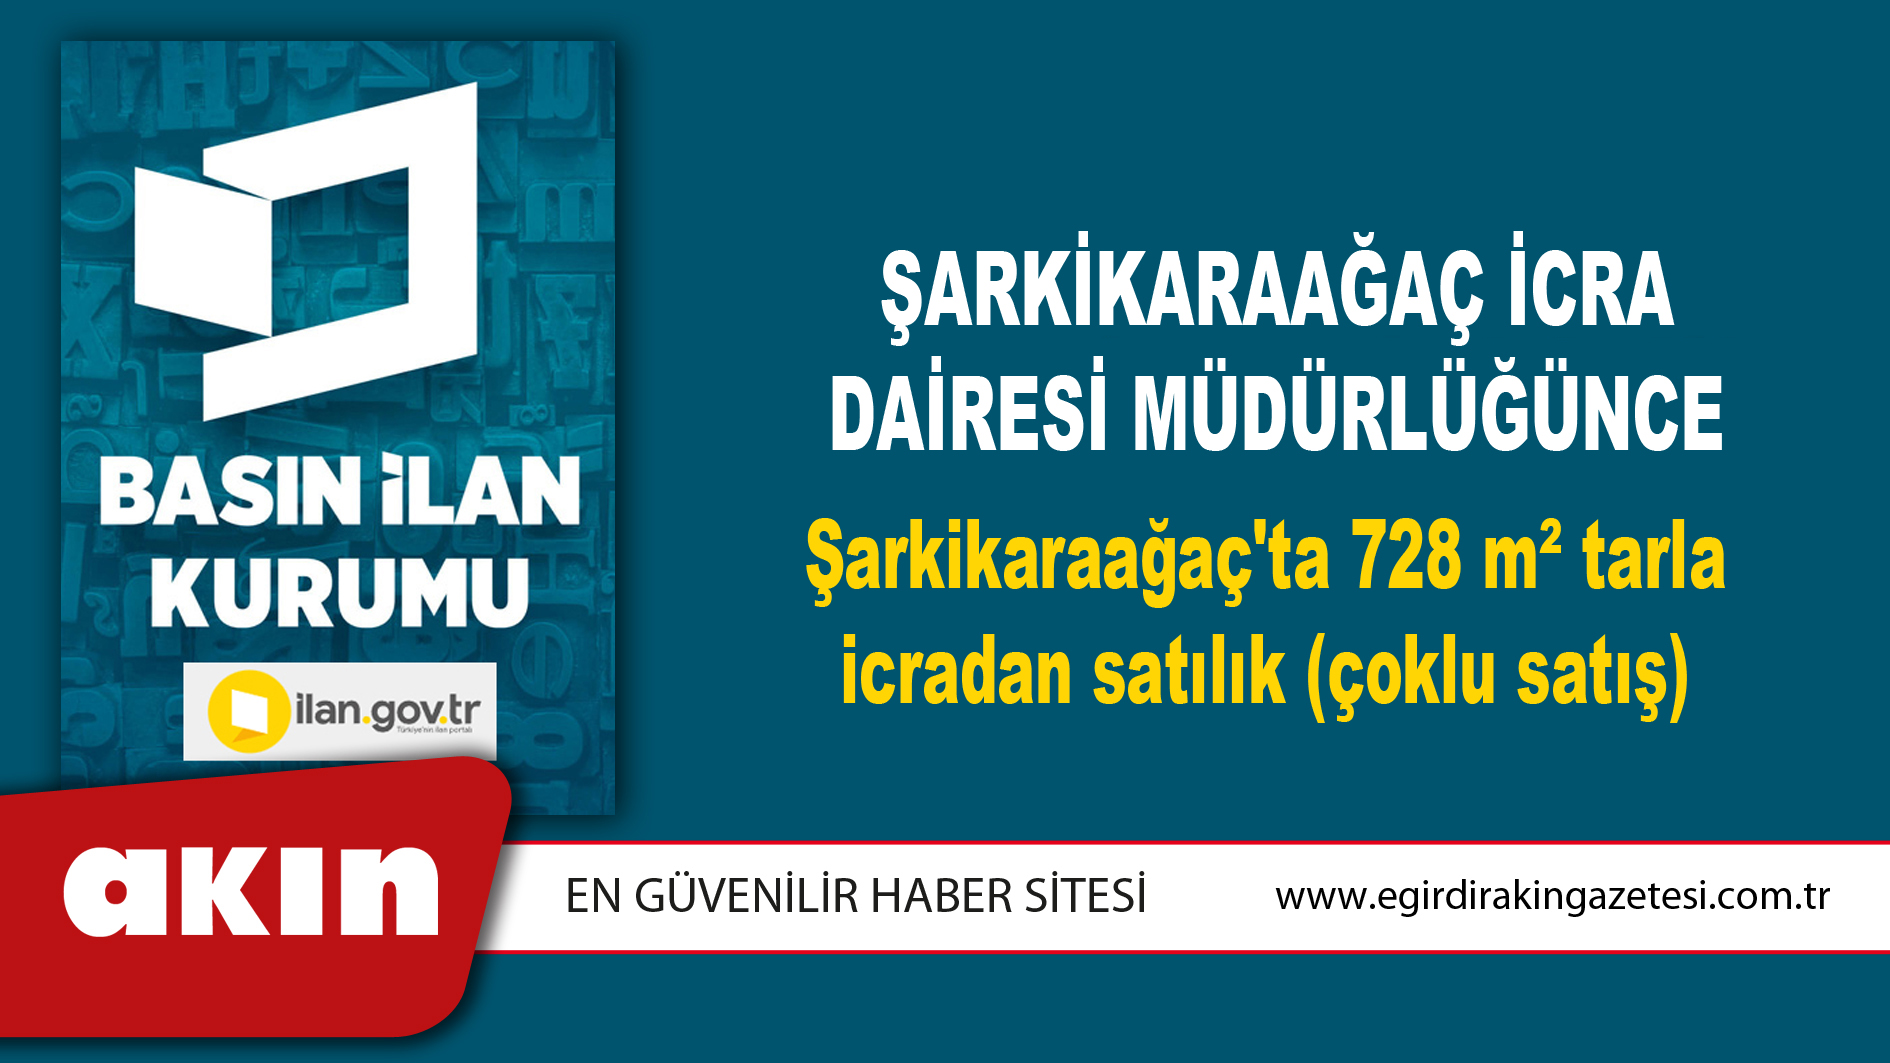 Şarkikaraağaç İcra Dairesi Müdürlüğünce Şarkikaraağaç'ta 728 m² tarla icradan satılık (çoklu satış)